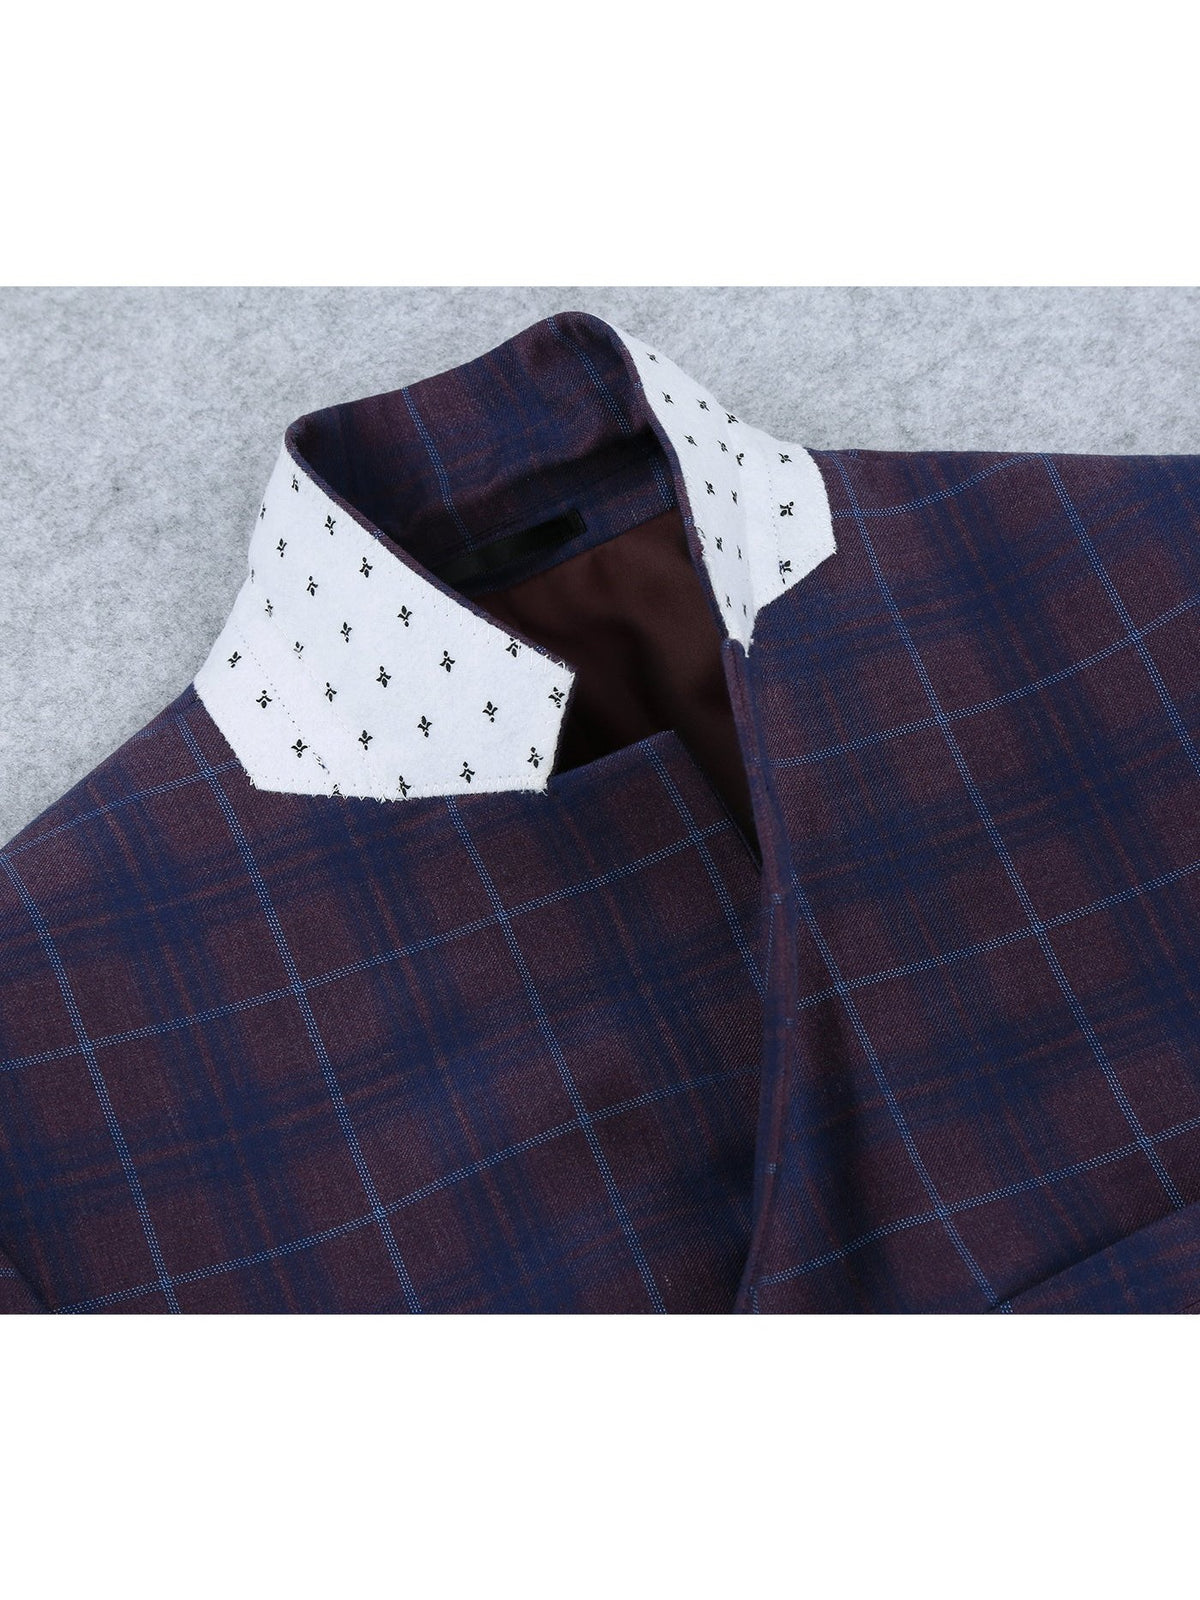 Men&#39;s 2 Buttons Slim Fit Blazer Premium Plaid Sport Coat